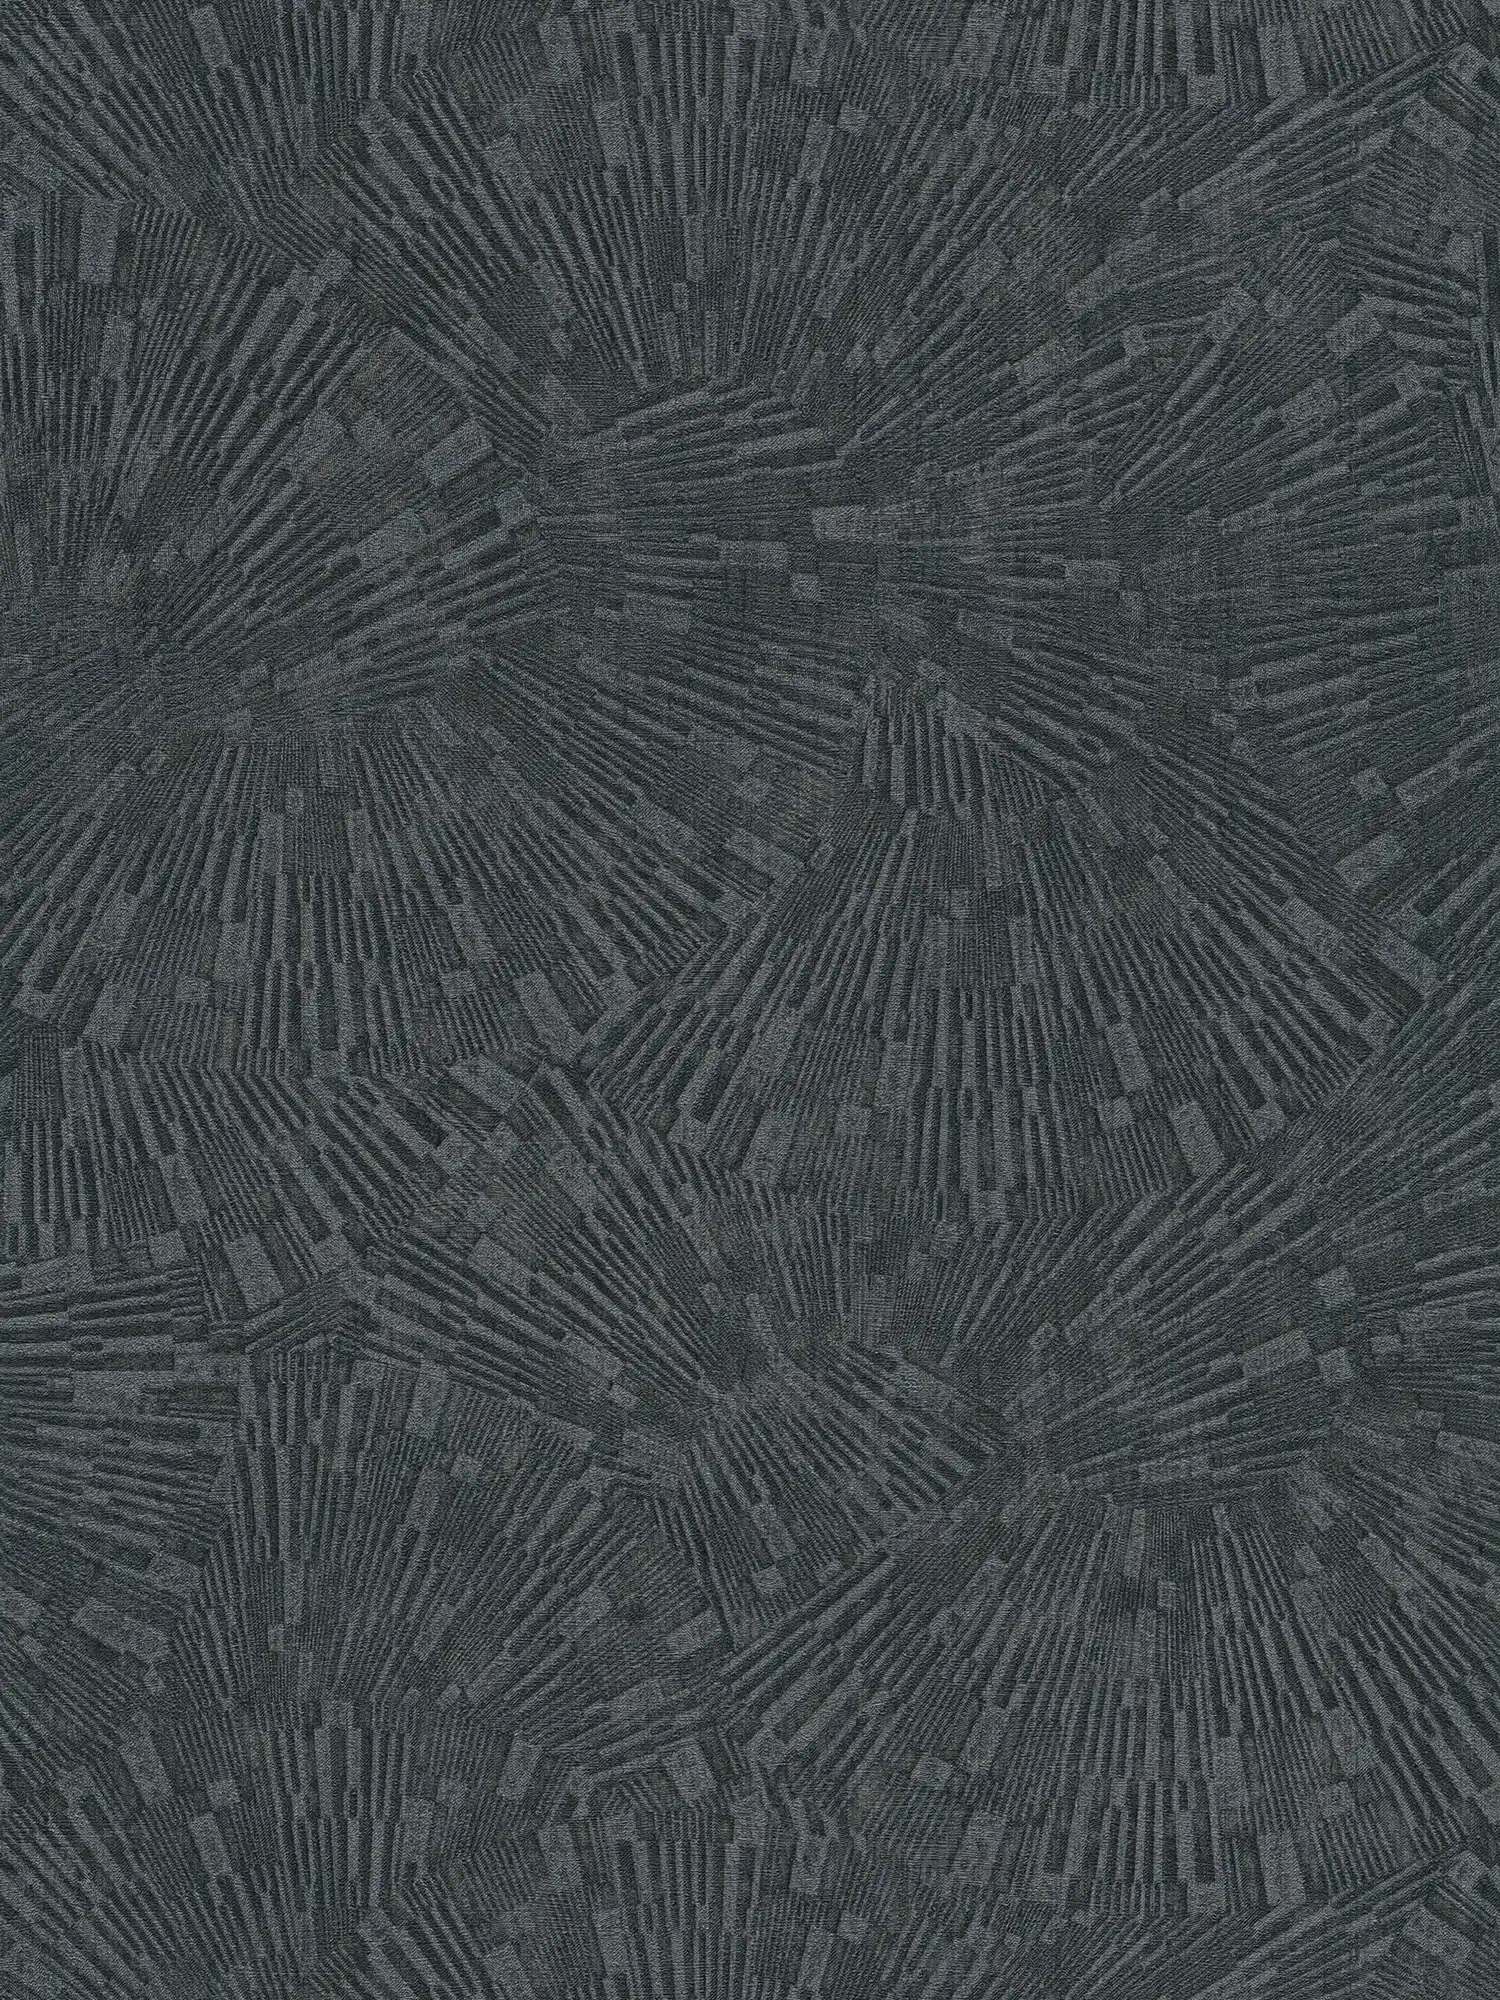 Papel pintado negro brillante con efecto de textura - Marrón, Negro
